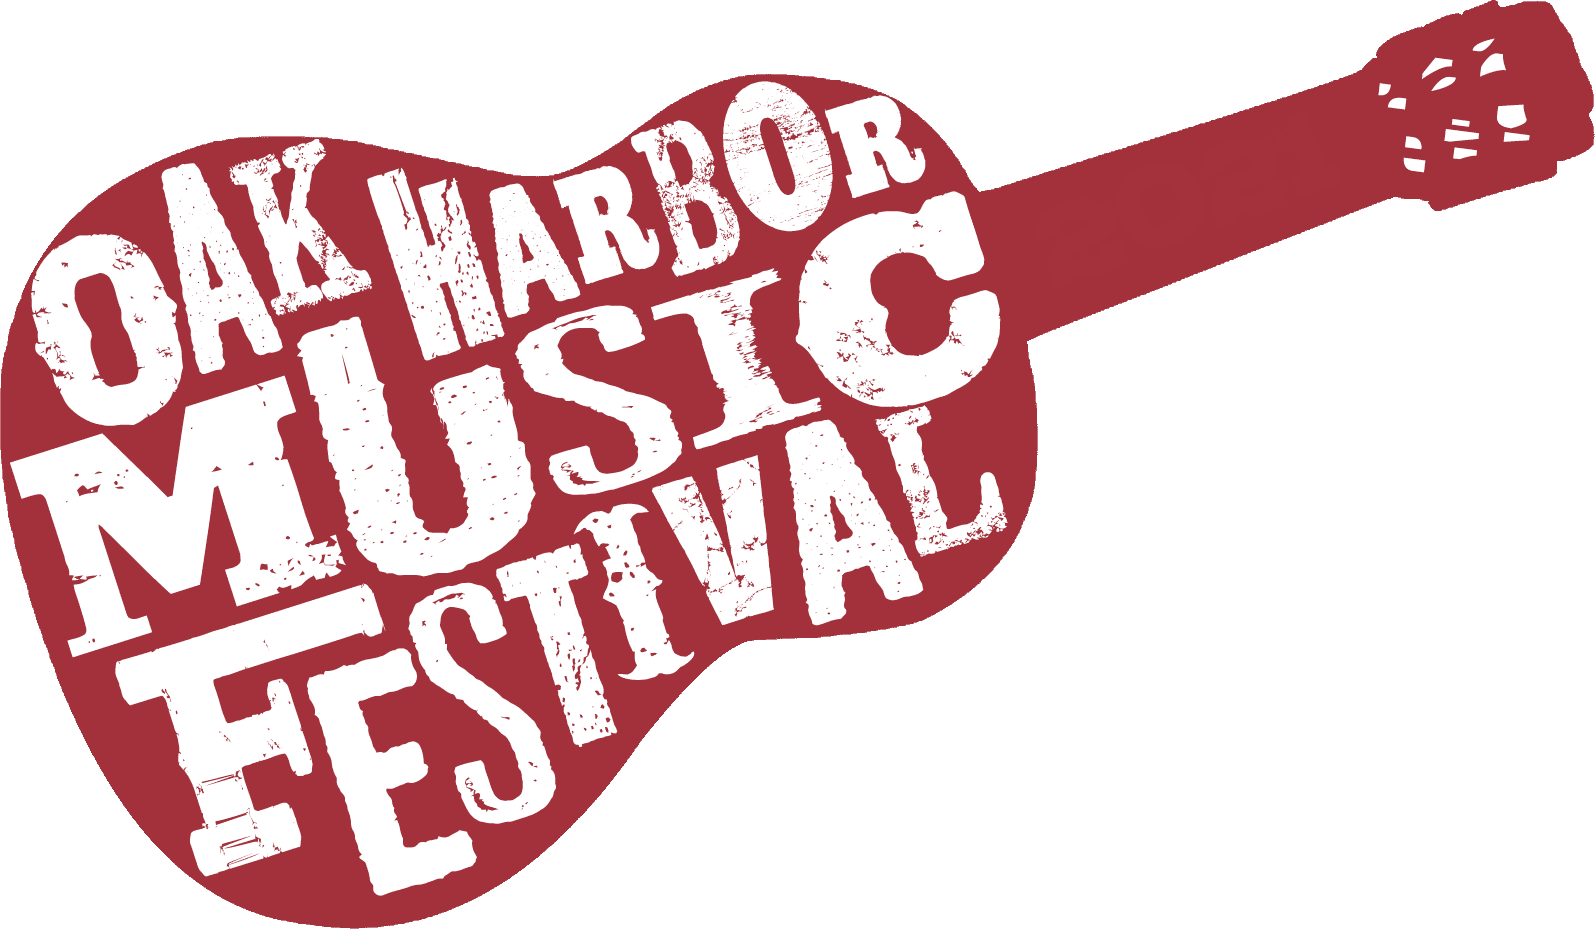 Oak Harbor Music Festival Logo